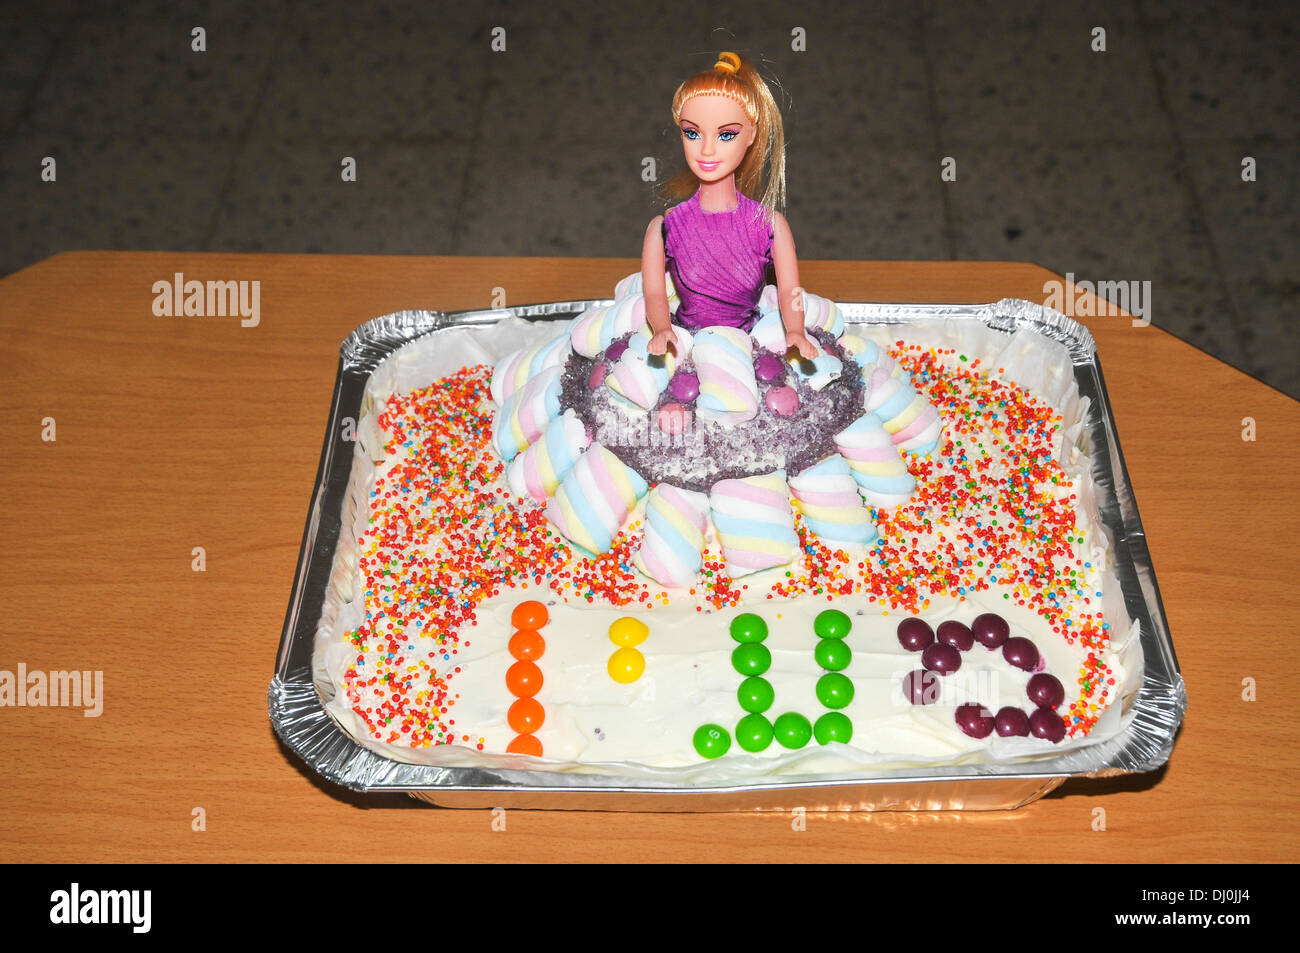 Muñeca barbie sosteniendo un pastel de cumpleaños con velas y